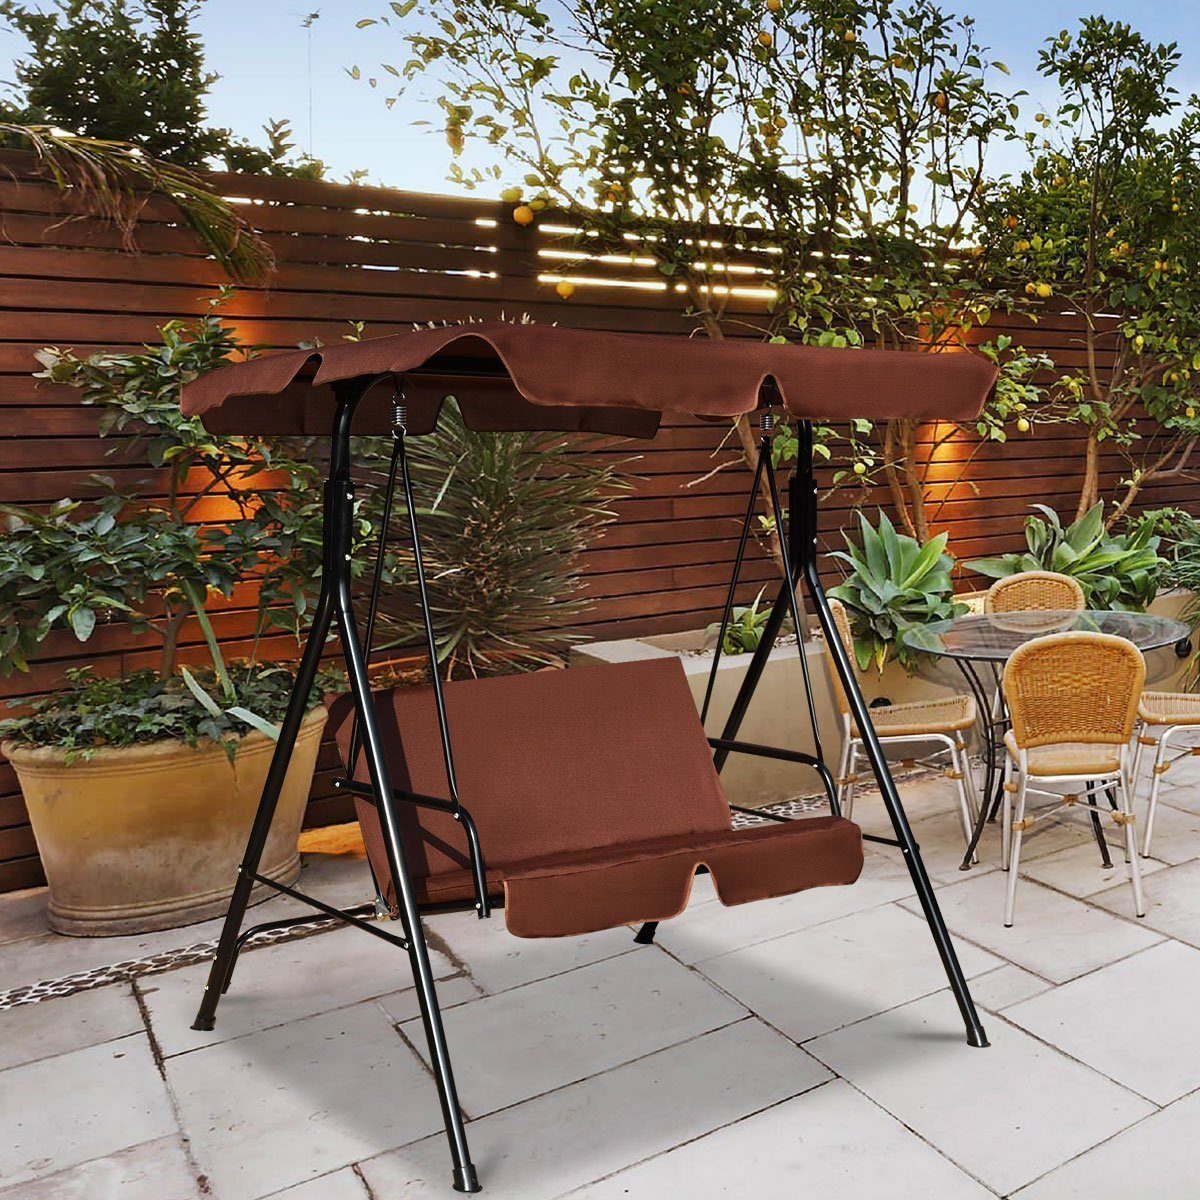 COSTWAY Hollywoodschaukel Gartenschaukel, Gartenliege, Braun 2-Sitzer Sonnendach, mit